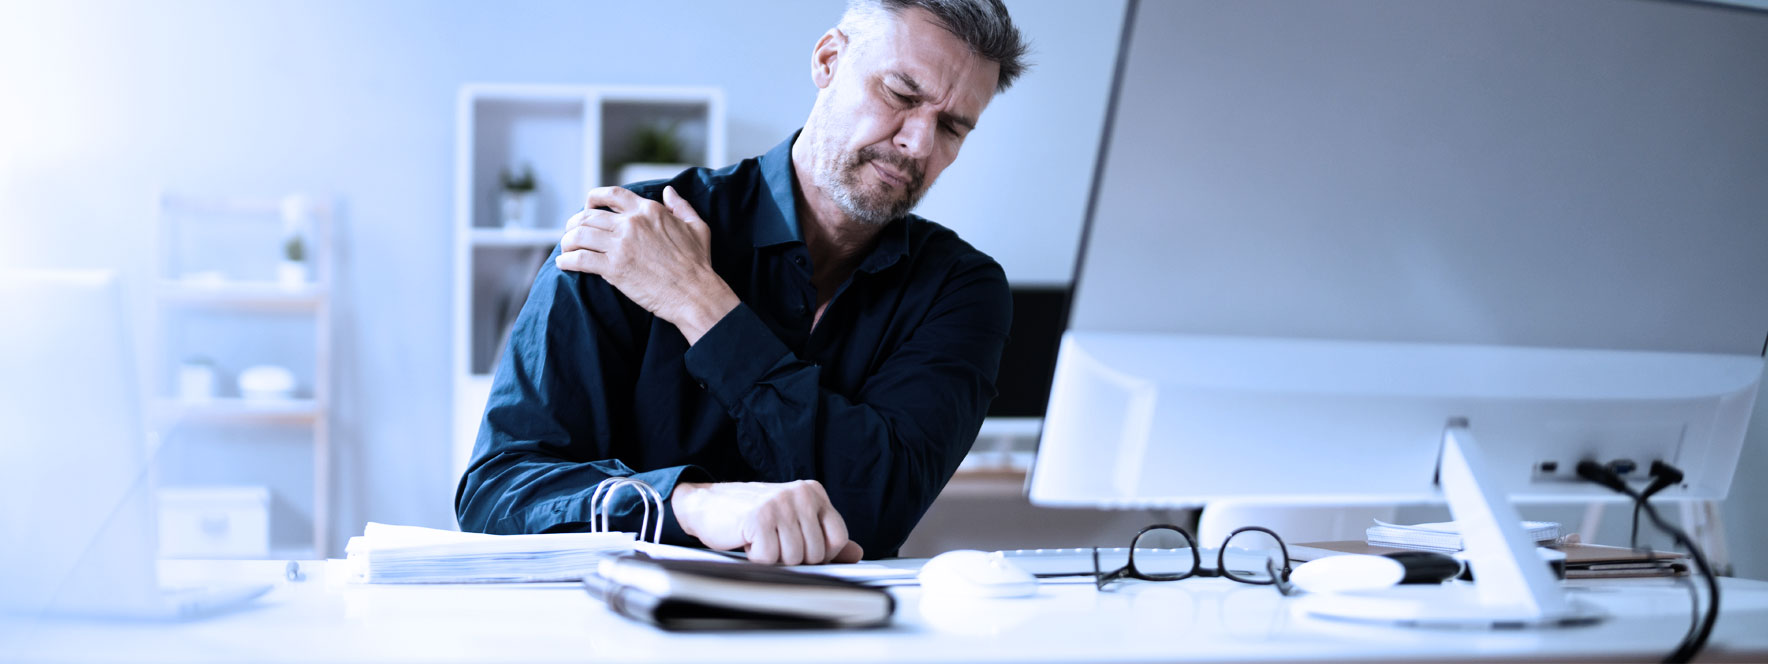 Un homme travaillant à l'ordinateur à une douleur à l'épaule